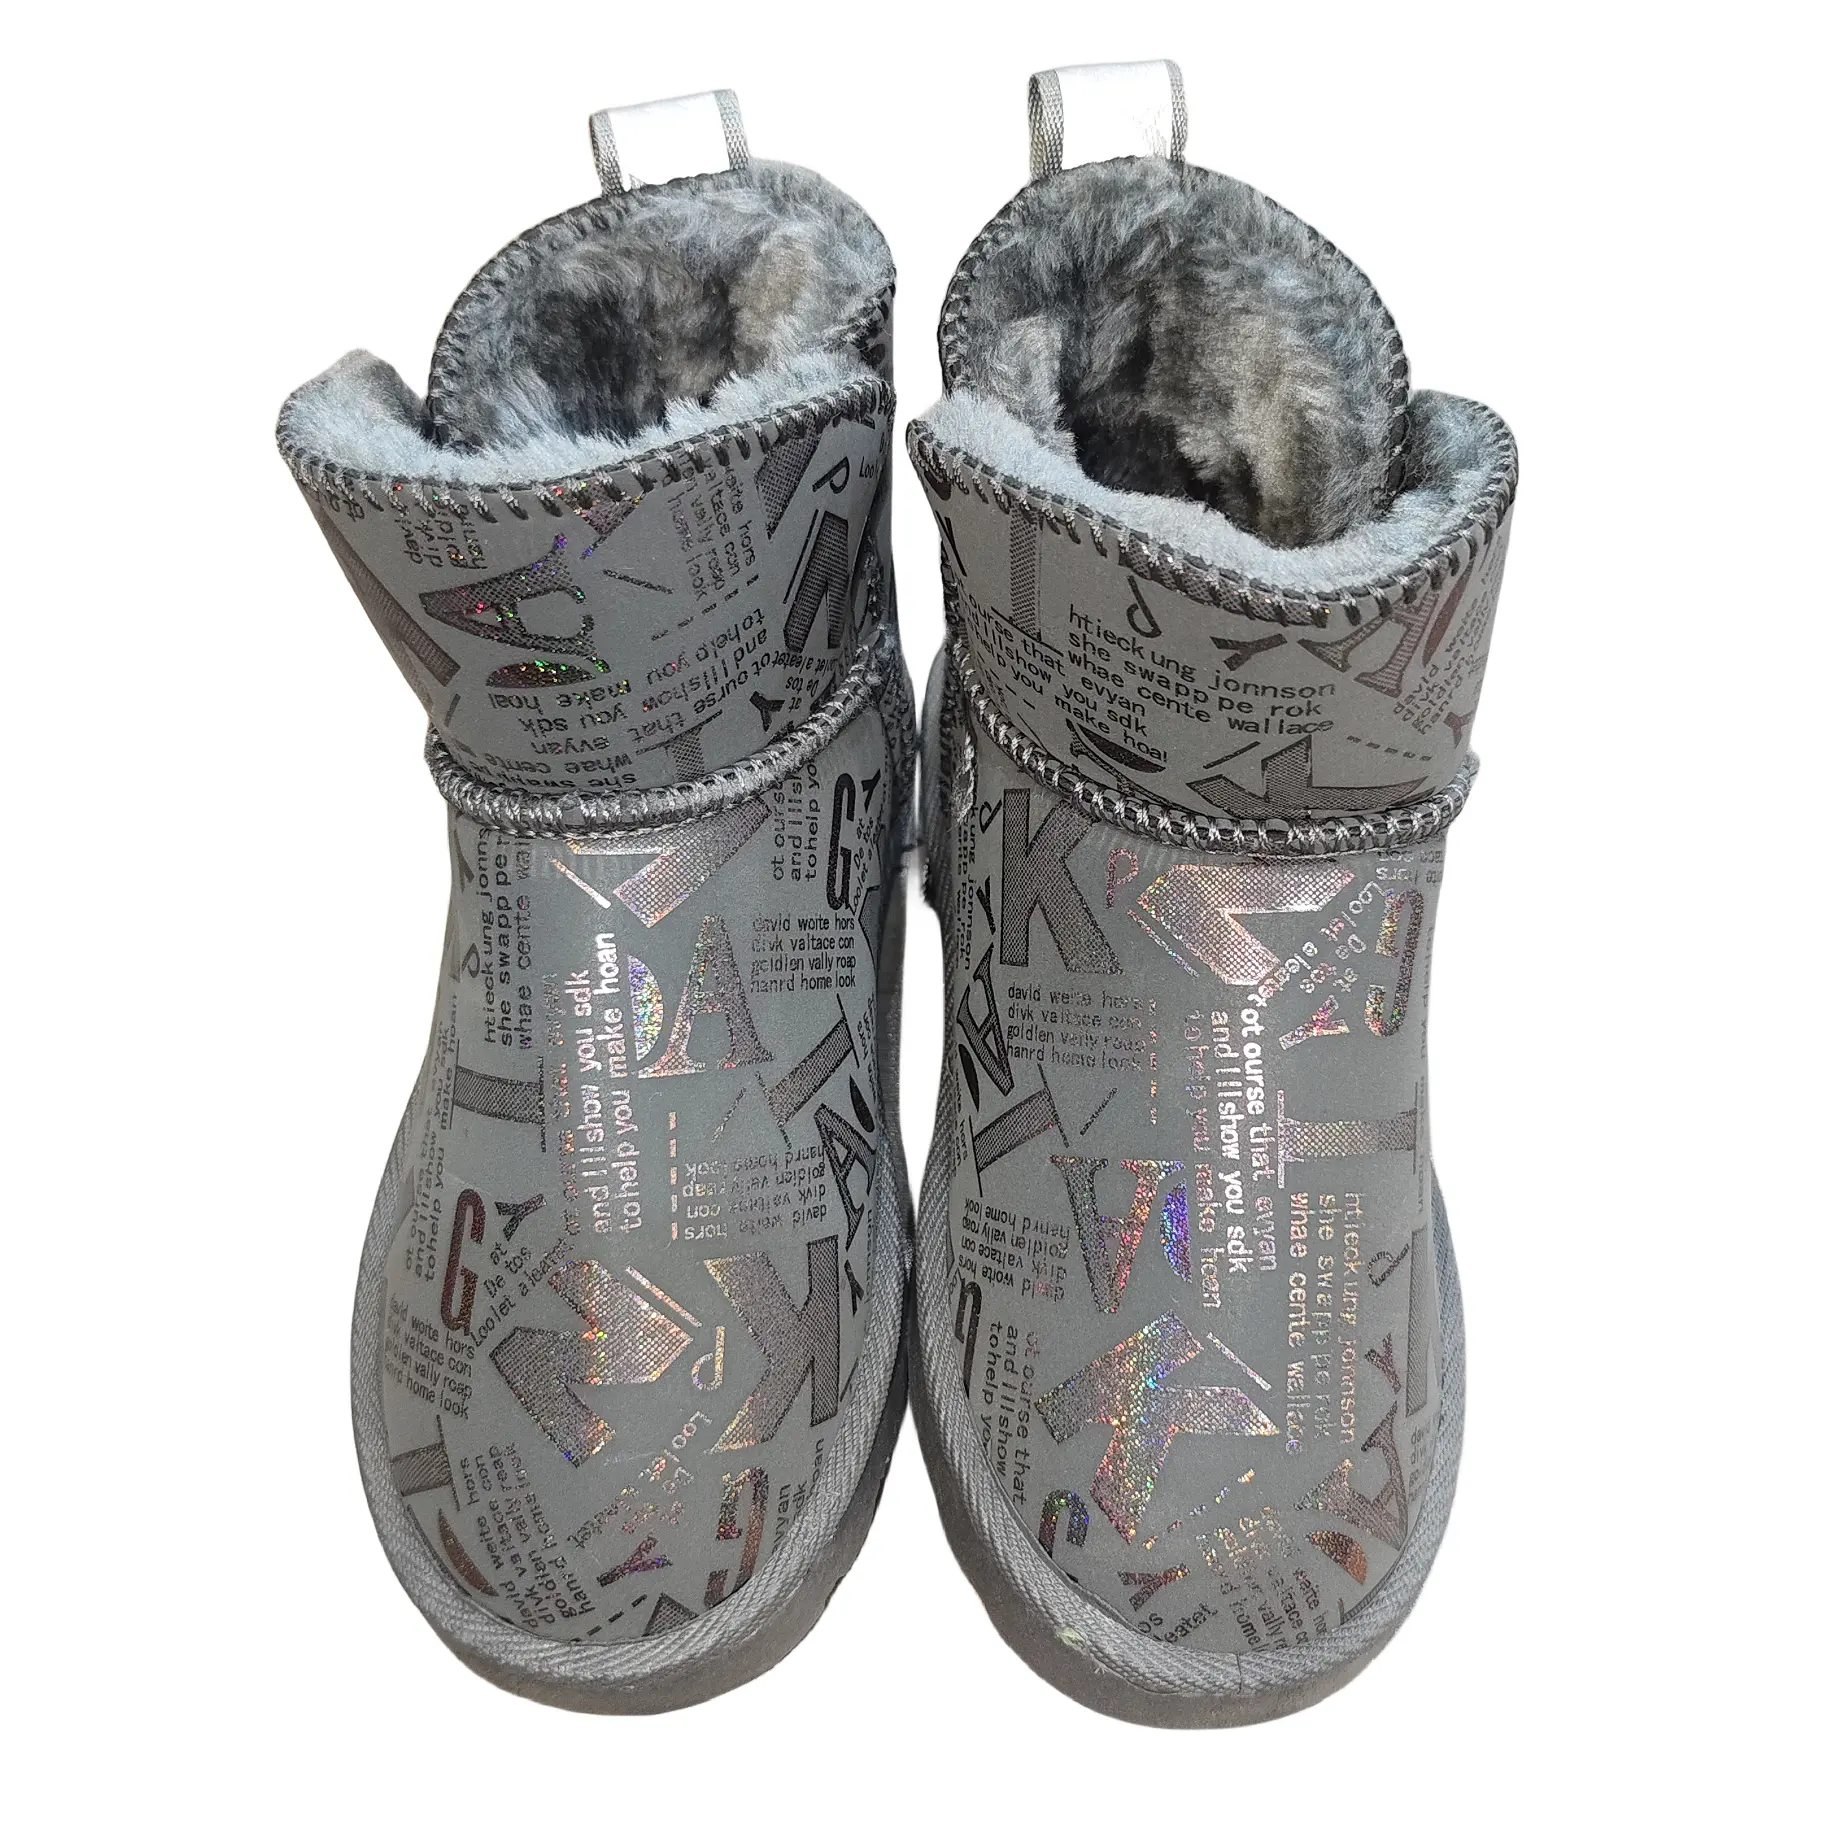 รองเท้าบูทหิมะหุ้มข้อสำหรับเด็กผู้ชายเด็กผู้หญิง, รองเท้าบูทนุ่มอบอุ่นสำหรับฤดูหนาว